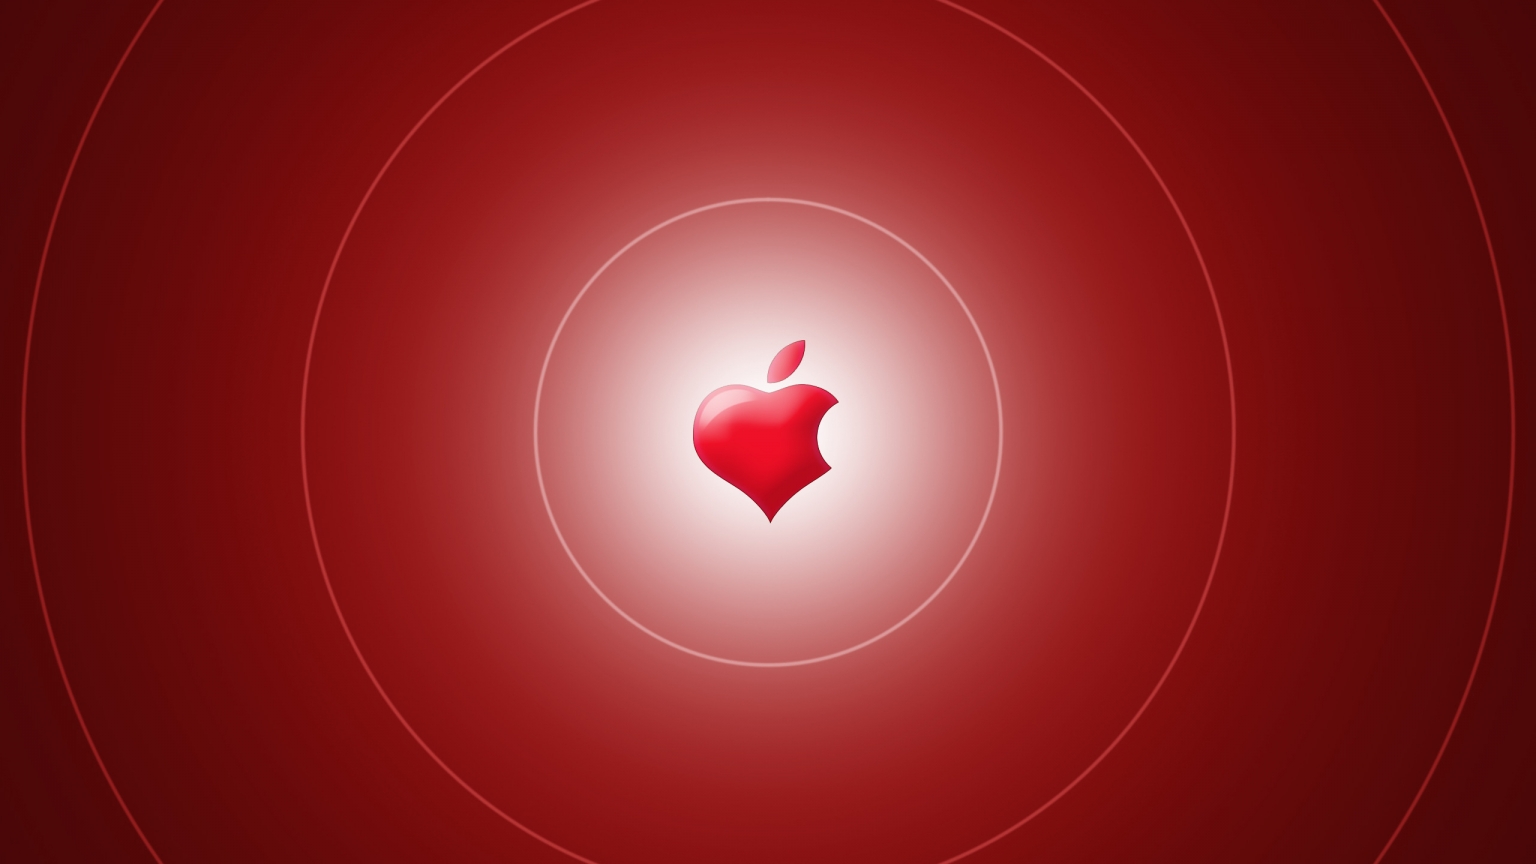 Apple Heart for 1536 x 864 HDTV resolution